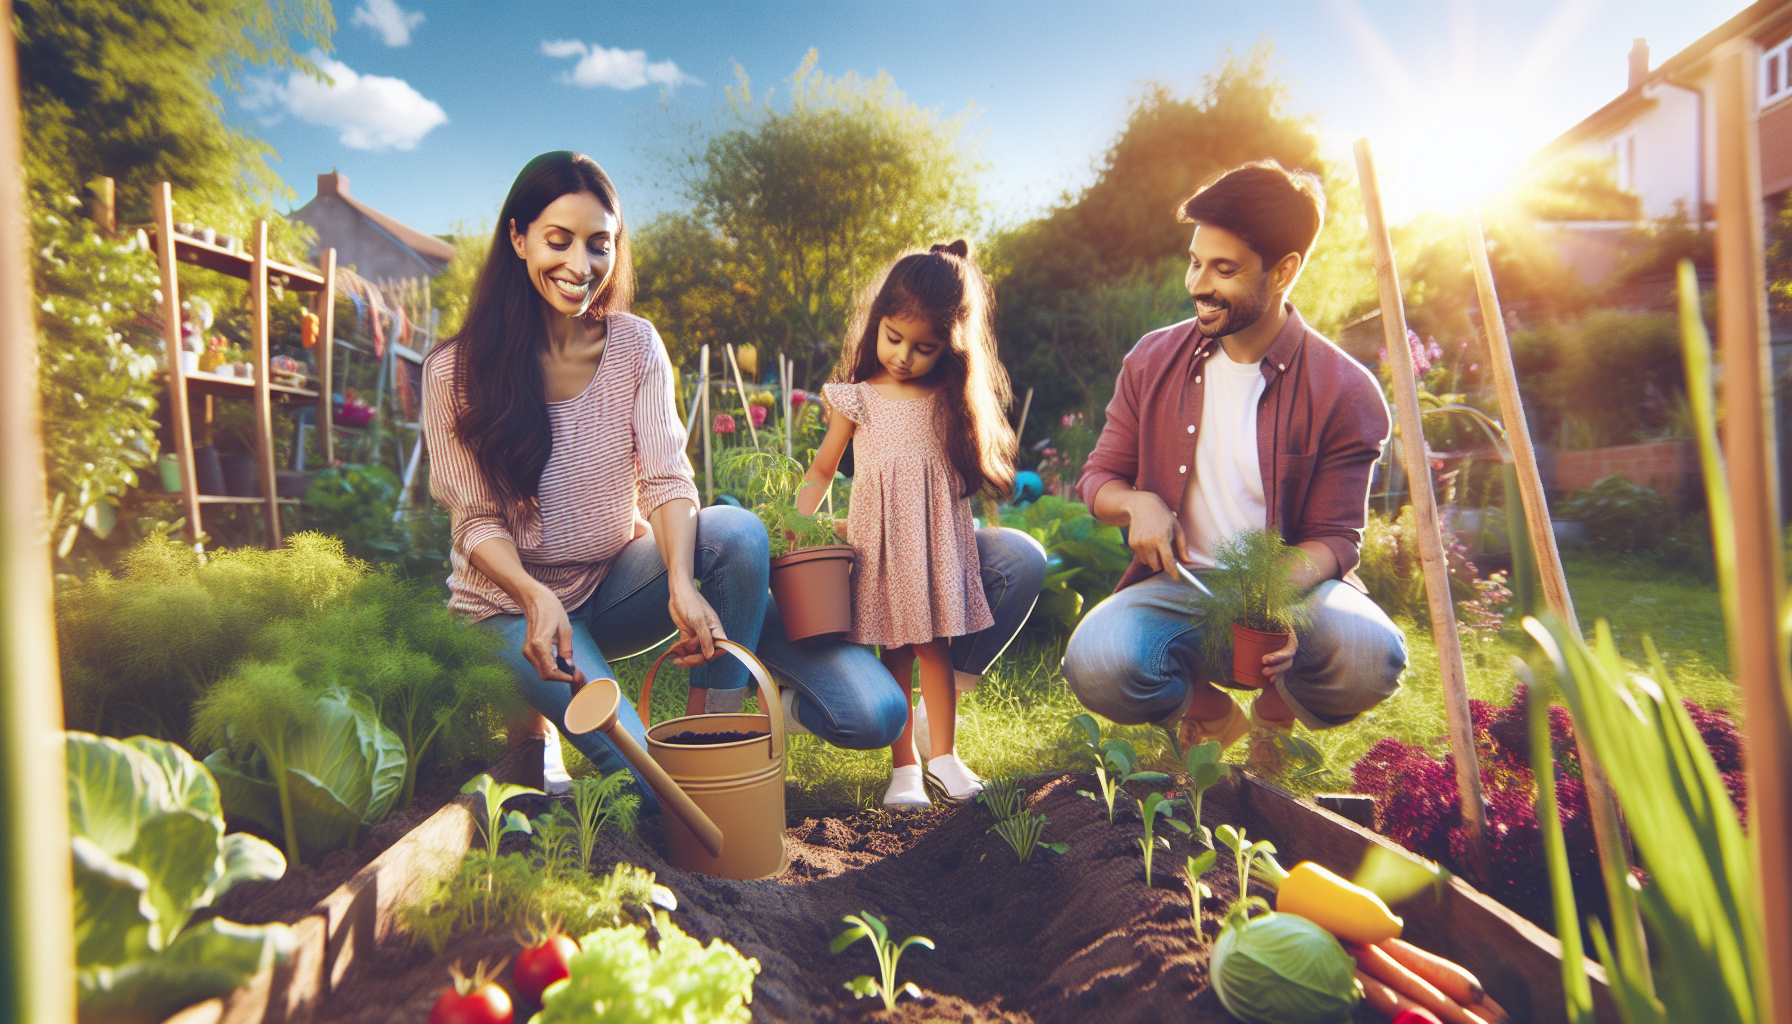 découvrez comment les parents d'élèves peuvent susciter la passion pour le jardinage chez leurs enfants à padoux. conseils et astuces pour initier les enfants au plaisir de jardiner et les sensibiliser à la nature.